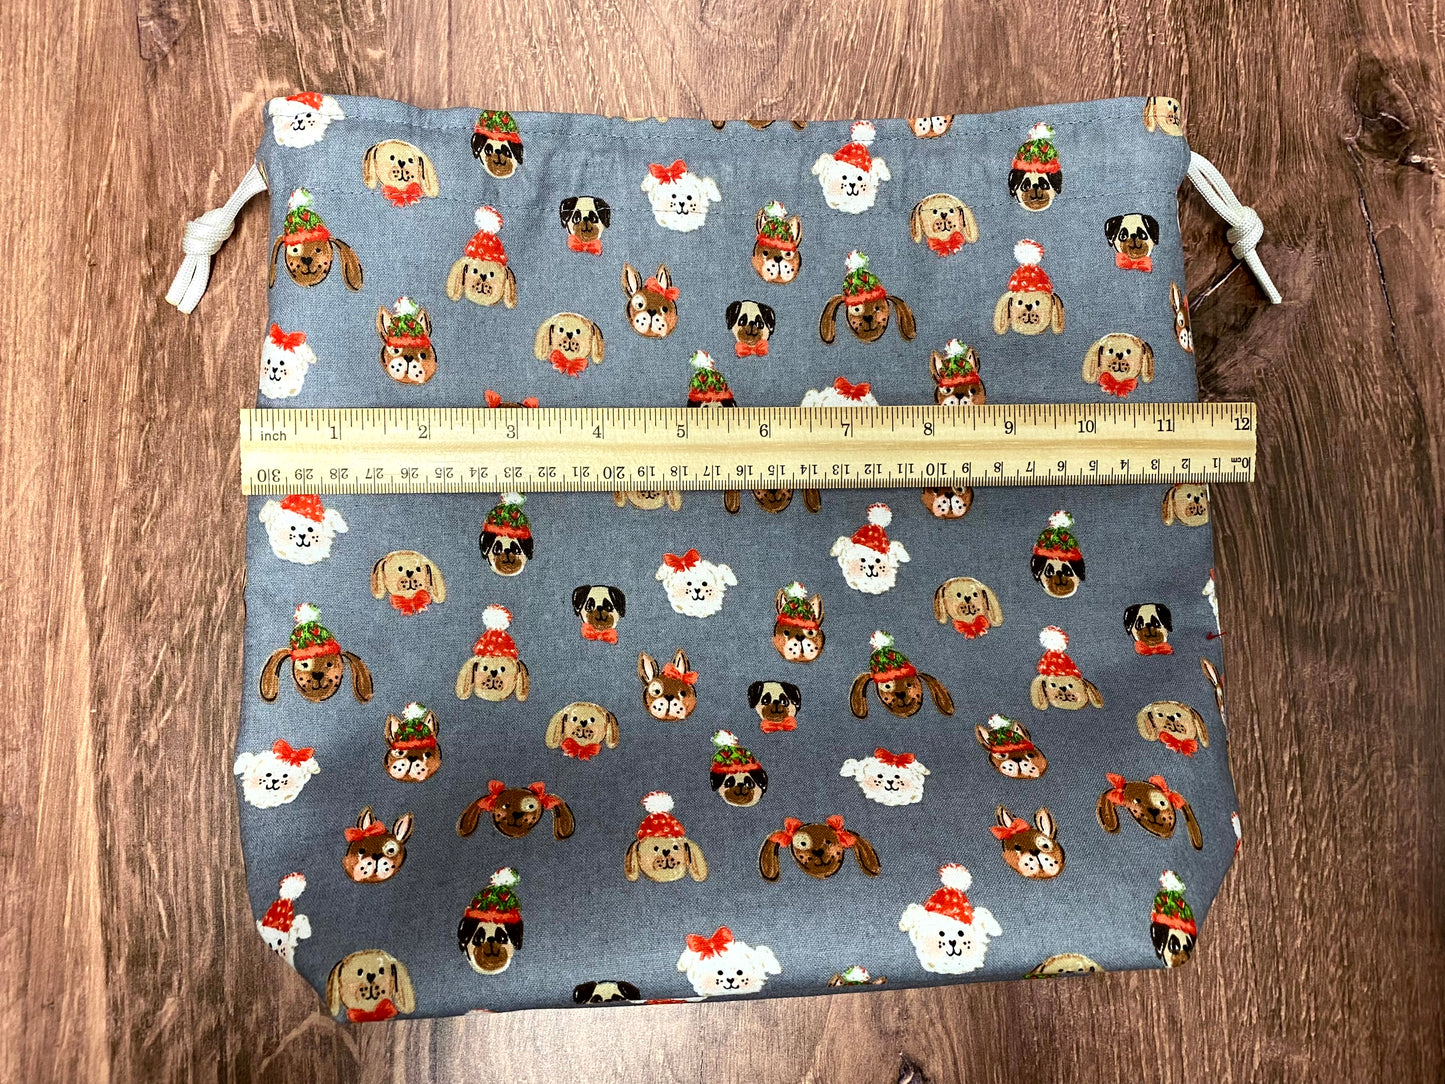 Dog Project Bag - Handmade - Drawstring Bag – Crochet Bag - Knitting Bag - Cross Stitch Bag - Christmas - Pug - French Bulldog